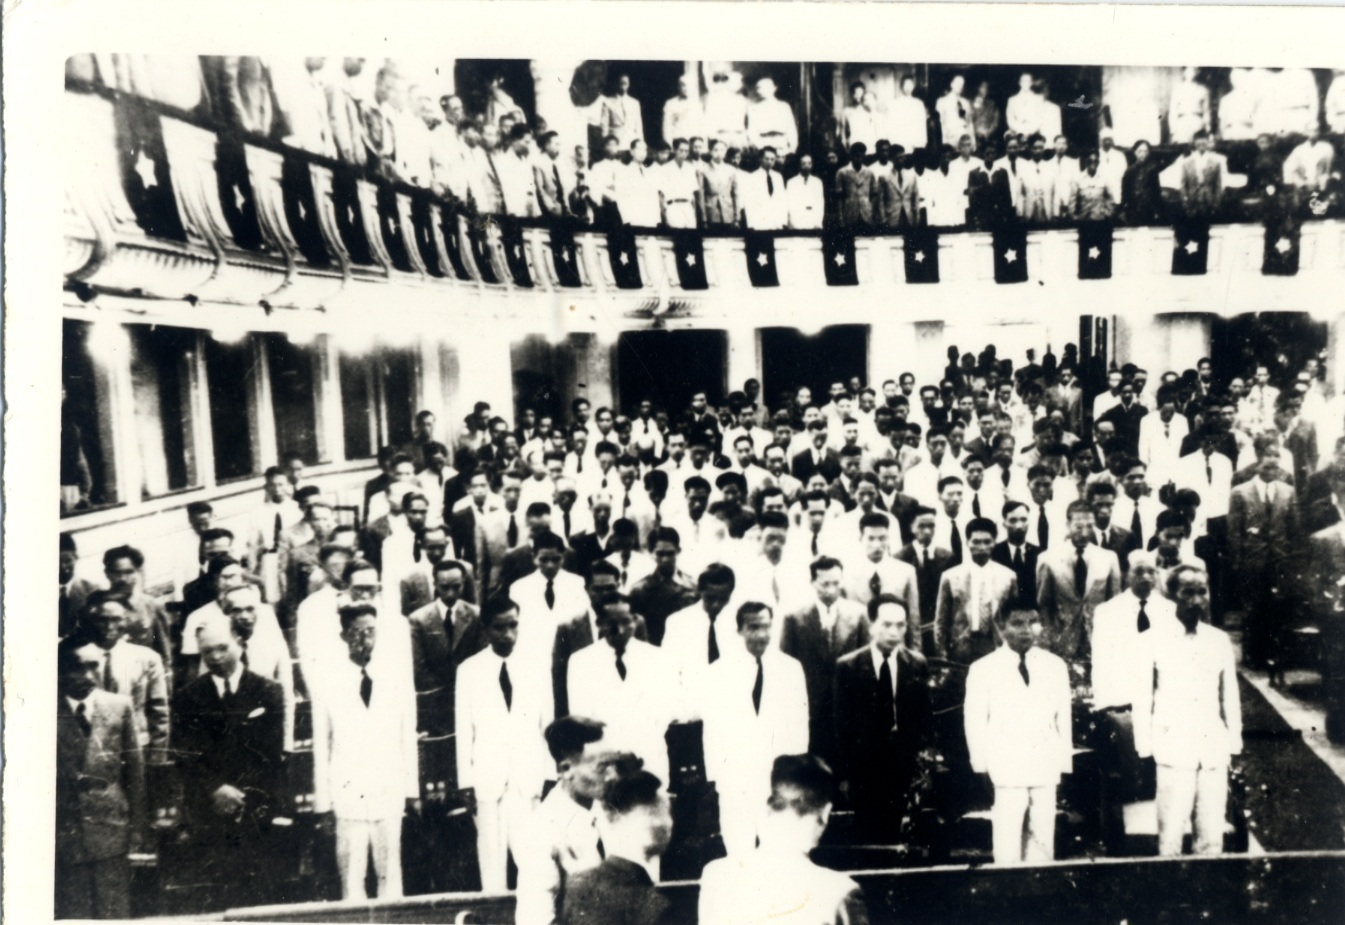 Lễ khai mạc Kỳ họp thứ hai Quốc hội khóa I ở Nhà Hát lớn, Hà Nội ngày 28/10/1946. Ảnh: Nguyễn Bá Khoản